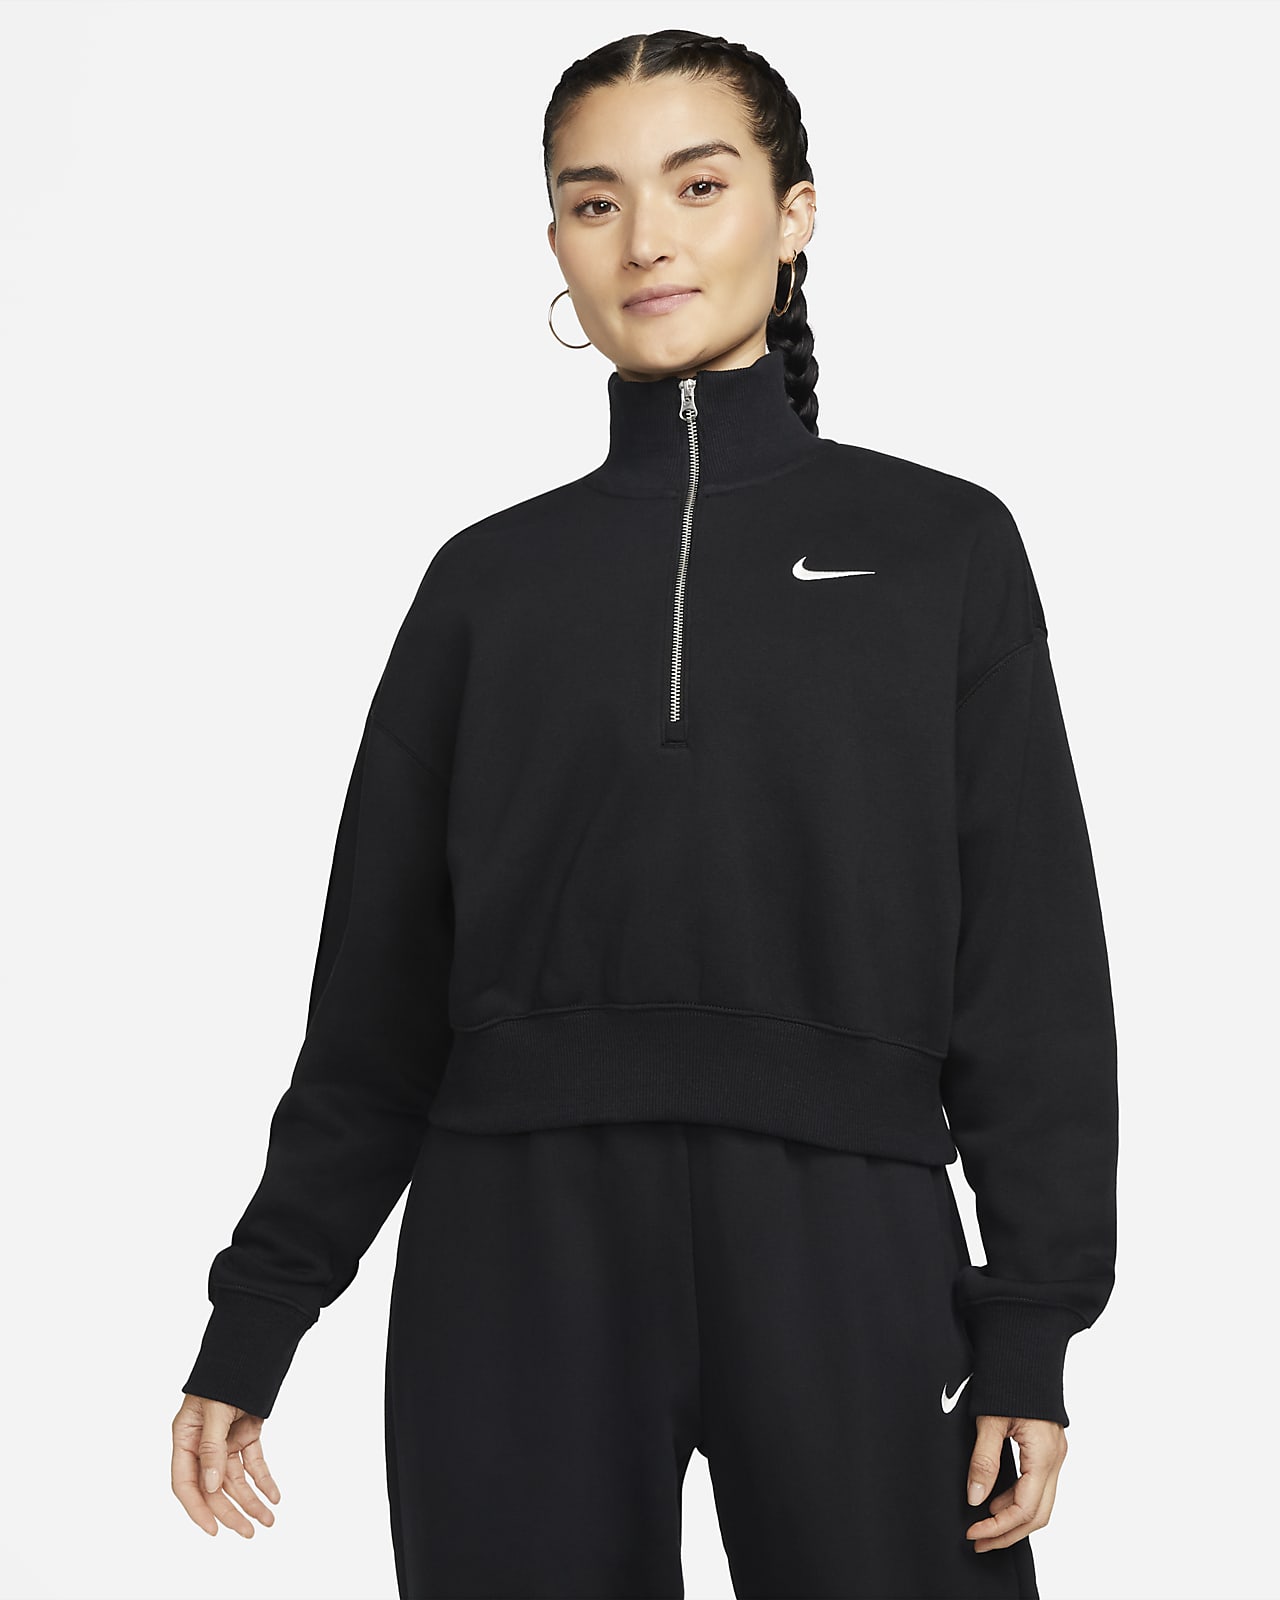 Dámská zkrácená mikina Nike Sportswear Phoenix Fleece s polovičním zipem